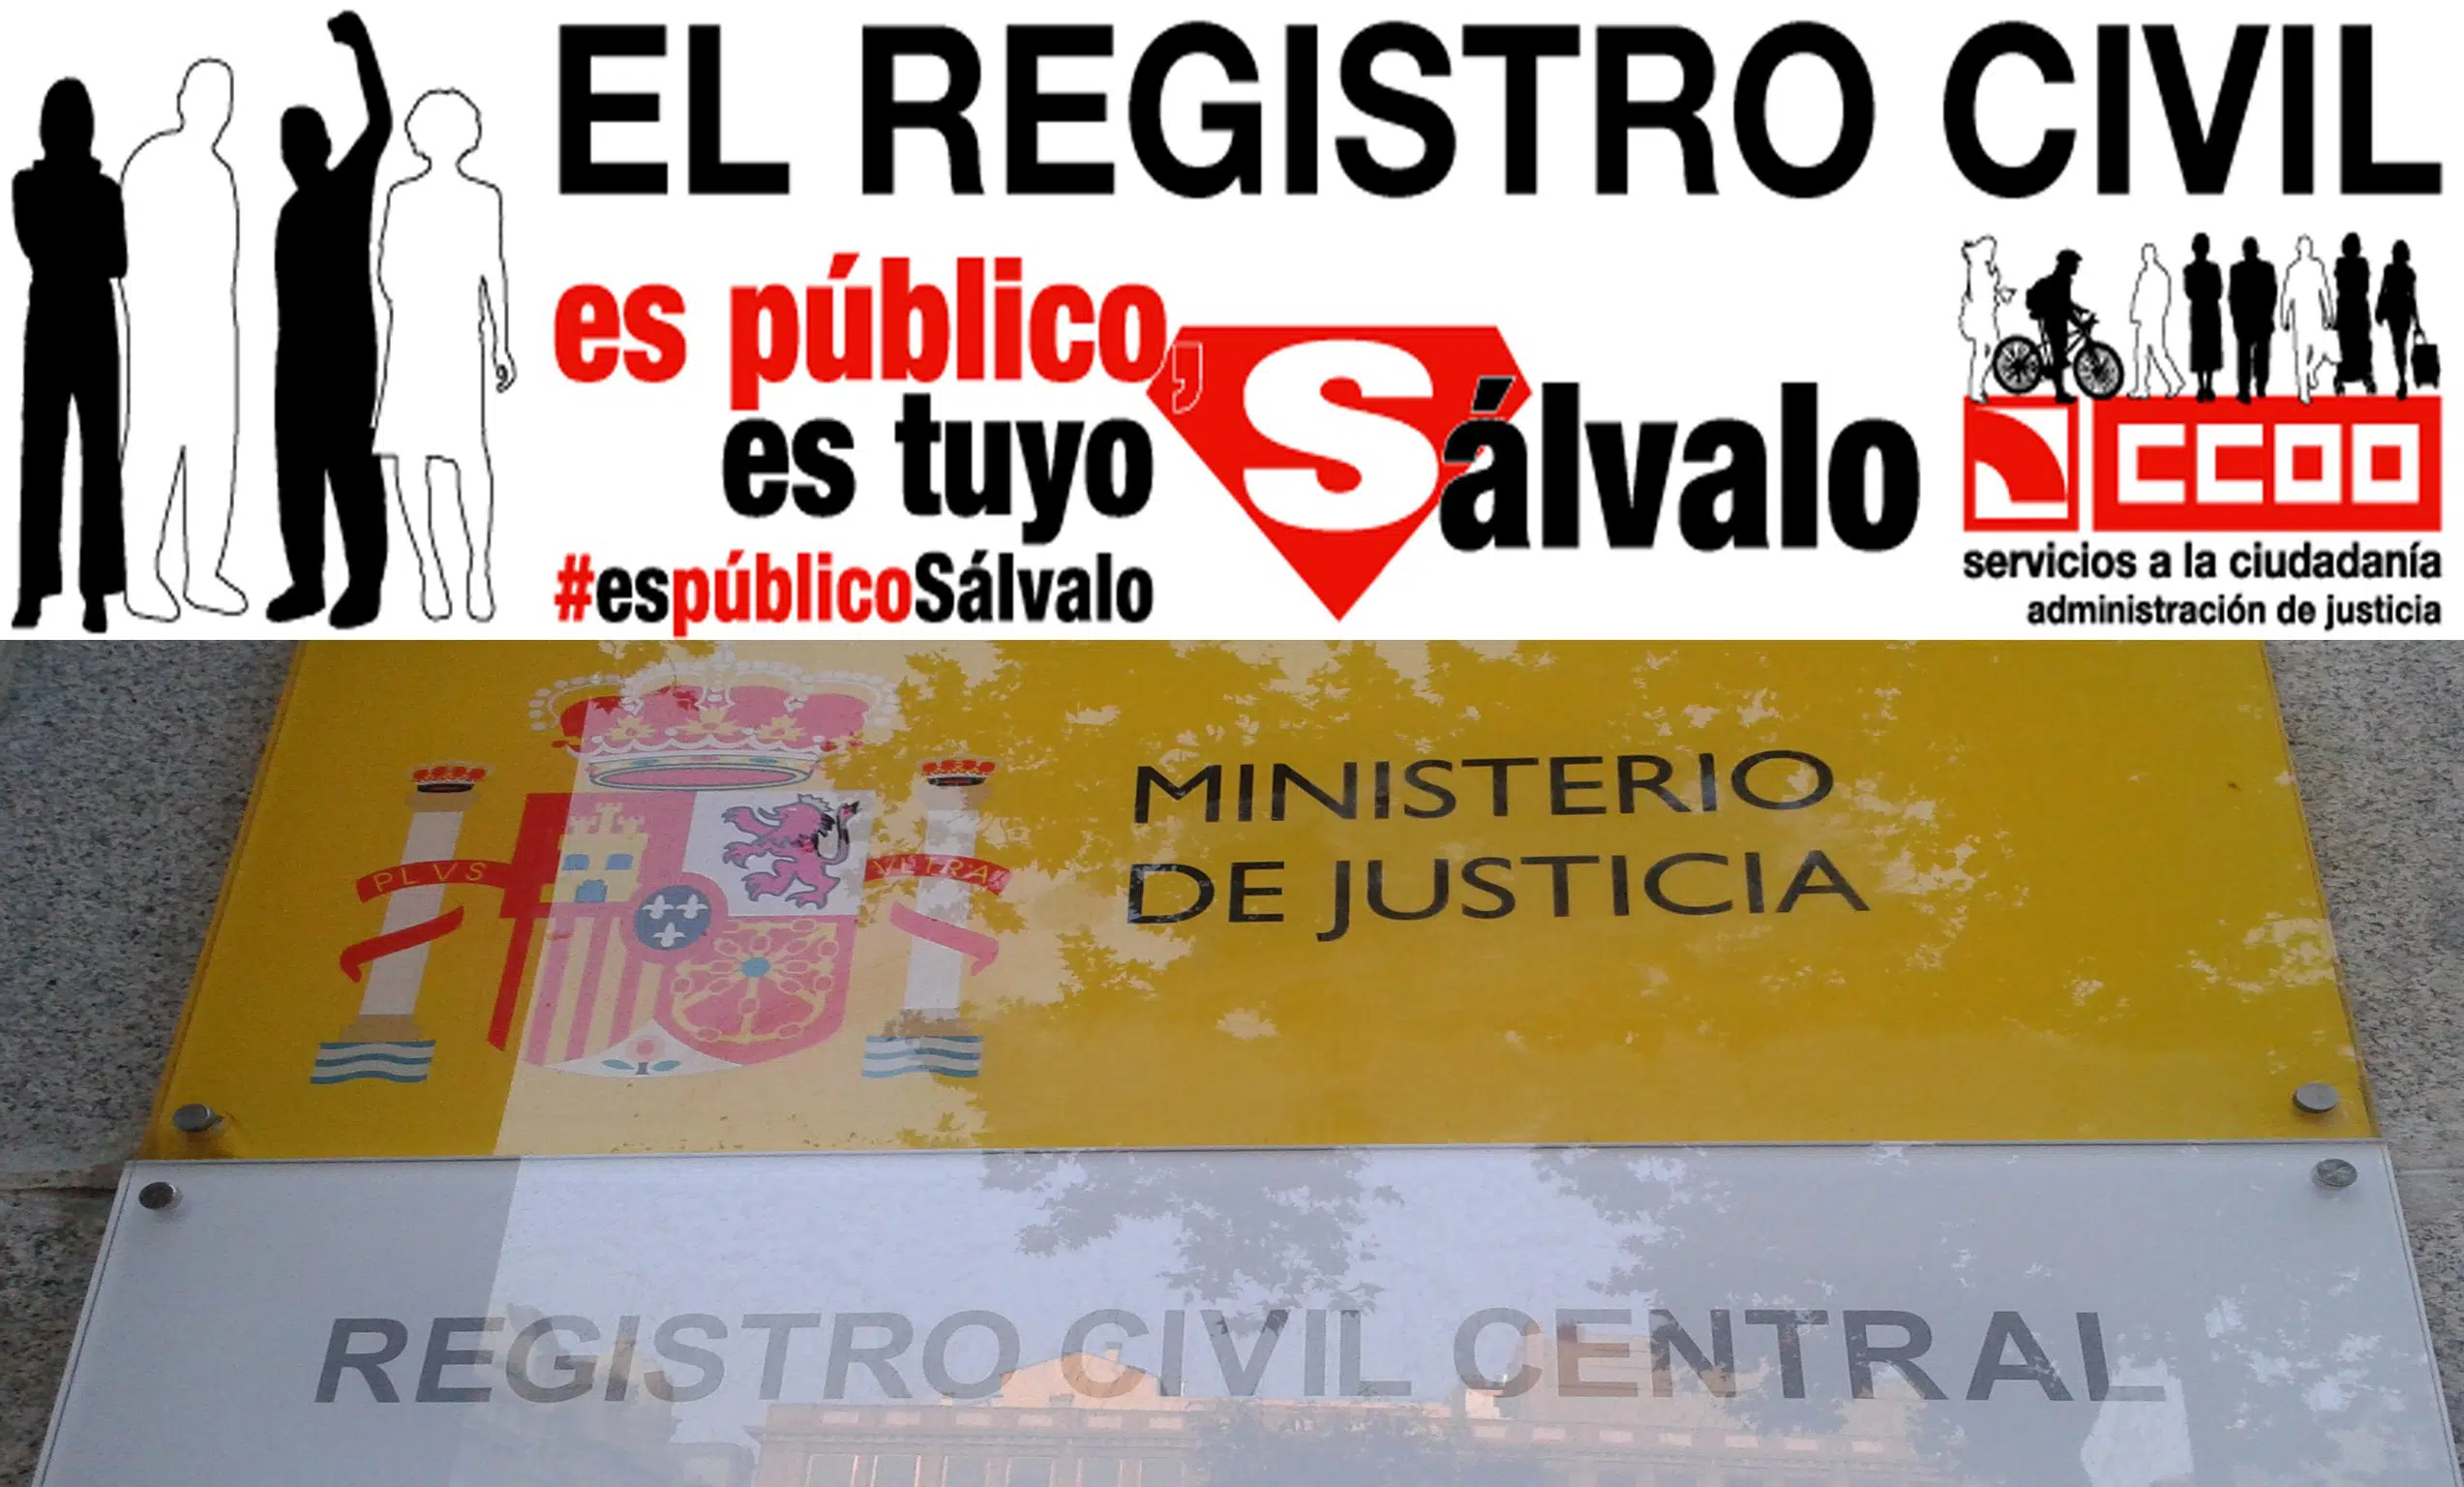 CCOO defiende que el Registro civil se mantenga como servicio público gratuito, cercano a los ciudadanos